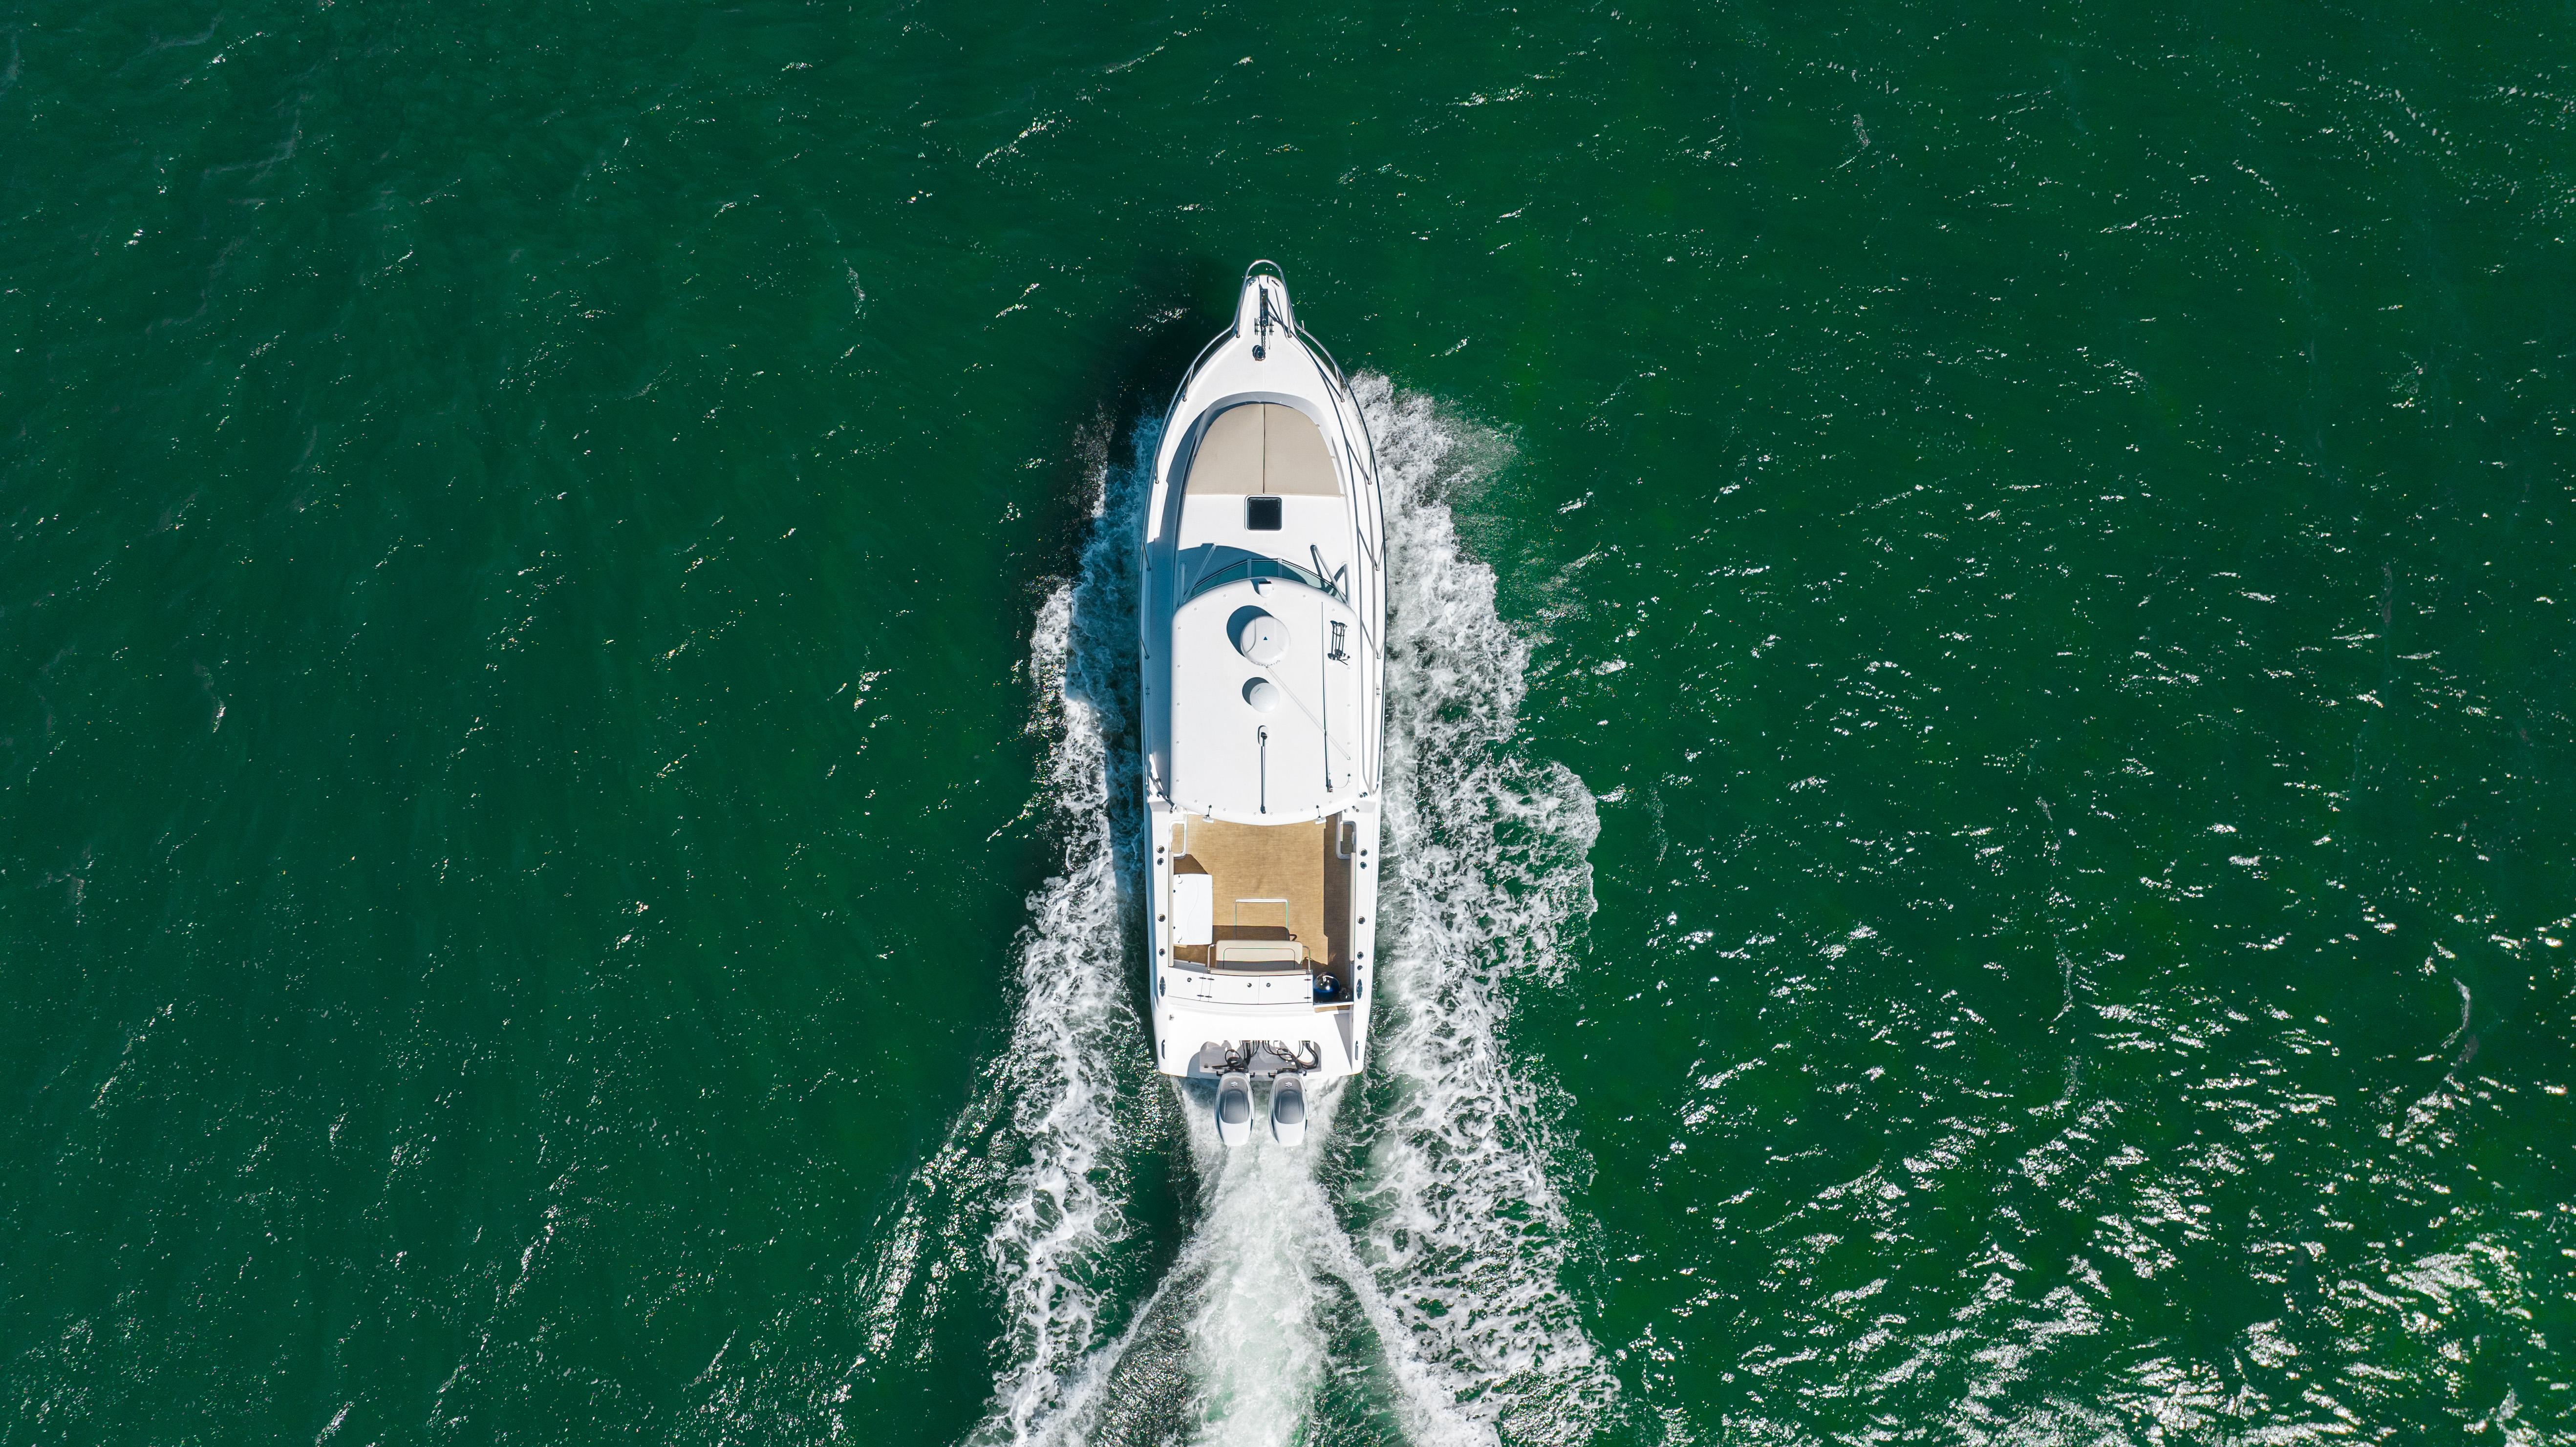 Stamas 37 TIKKUN - Aerial profile photo on water